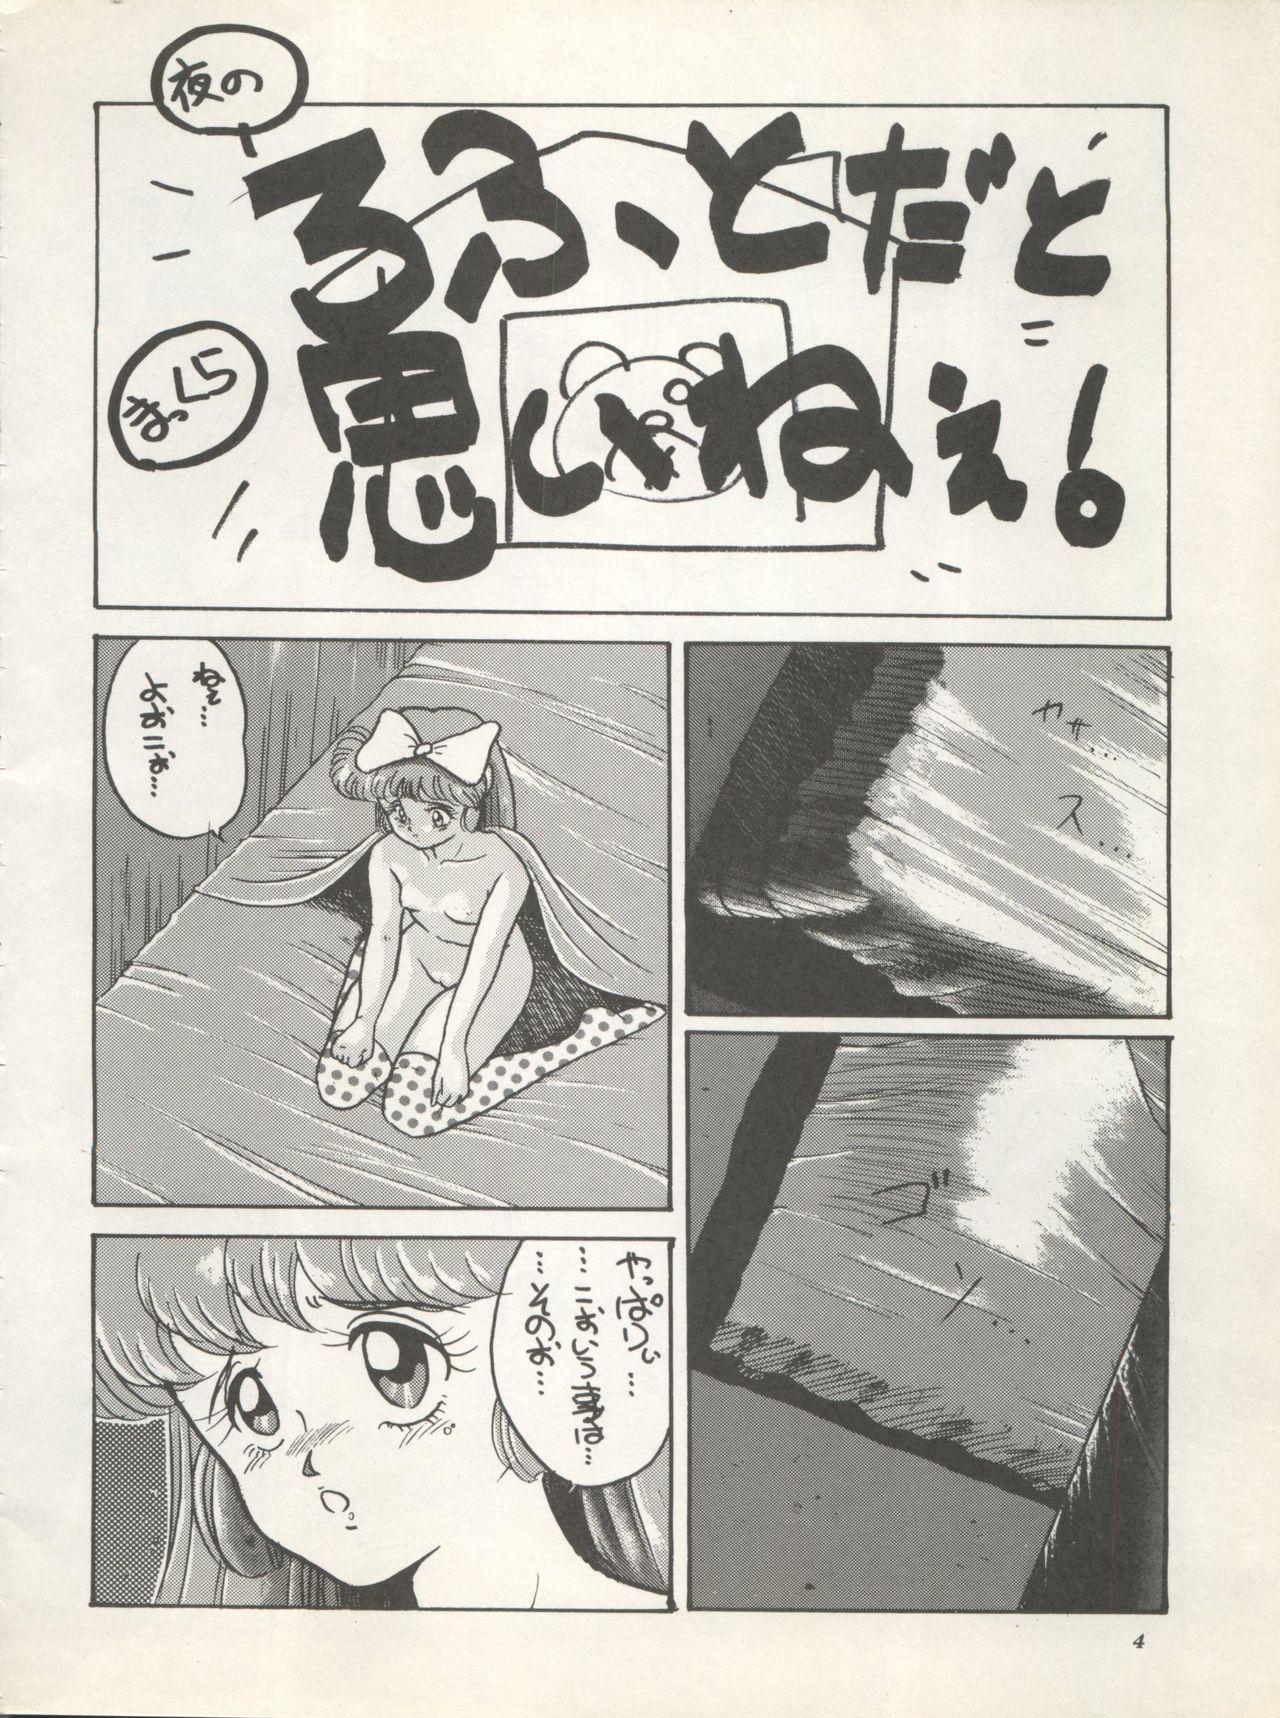 Alt SUPER REAL ELENA THE FINAL - Fushigi no umi no nadia Idol densetsu eriko Idol tenshi youkoso yoko Letsdoeit - Page 6